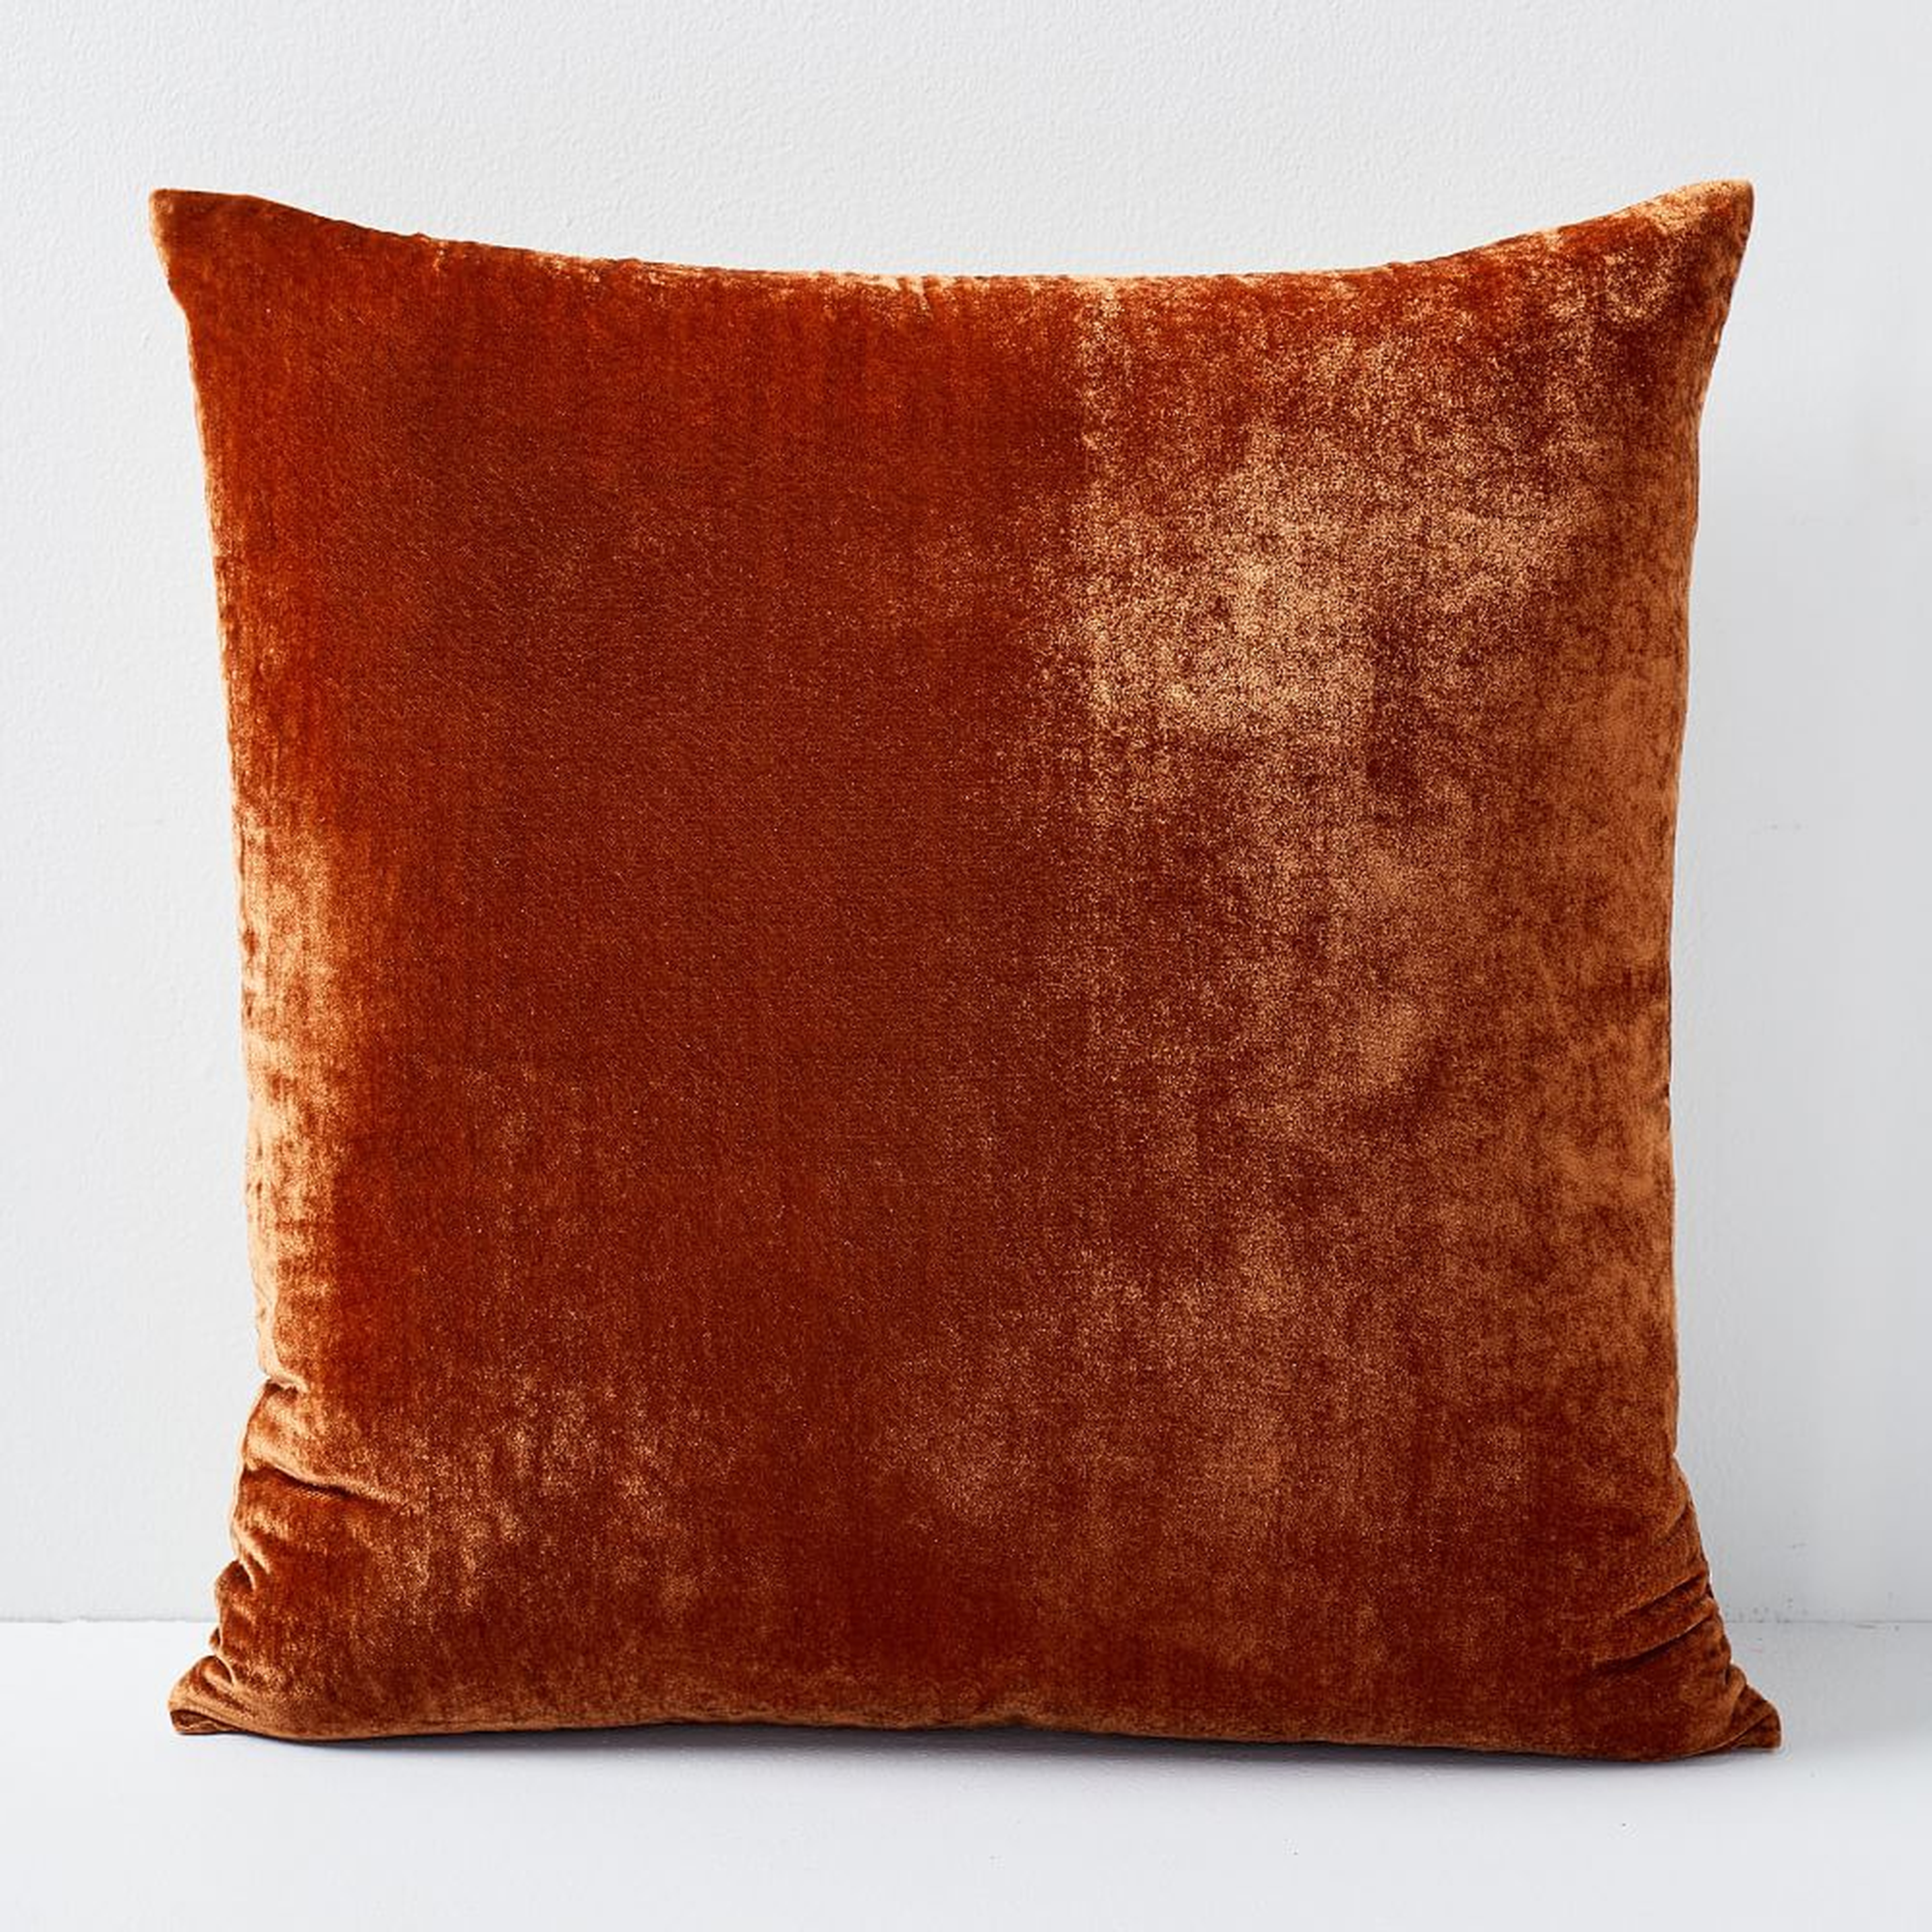 Lush Velvet Pillow Cover, 16"x16", Copper - West Elm